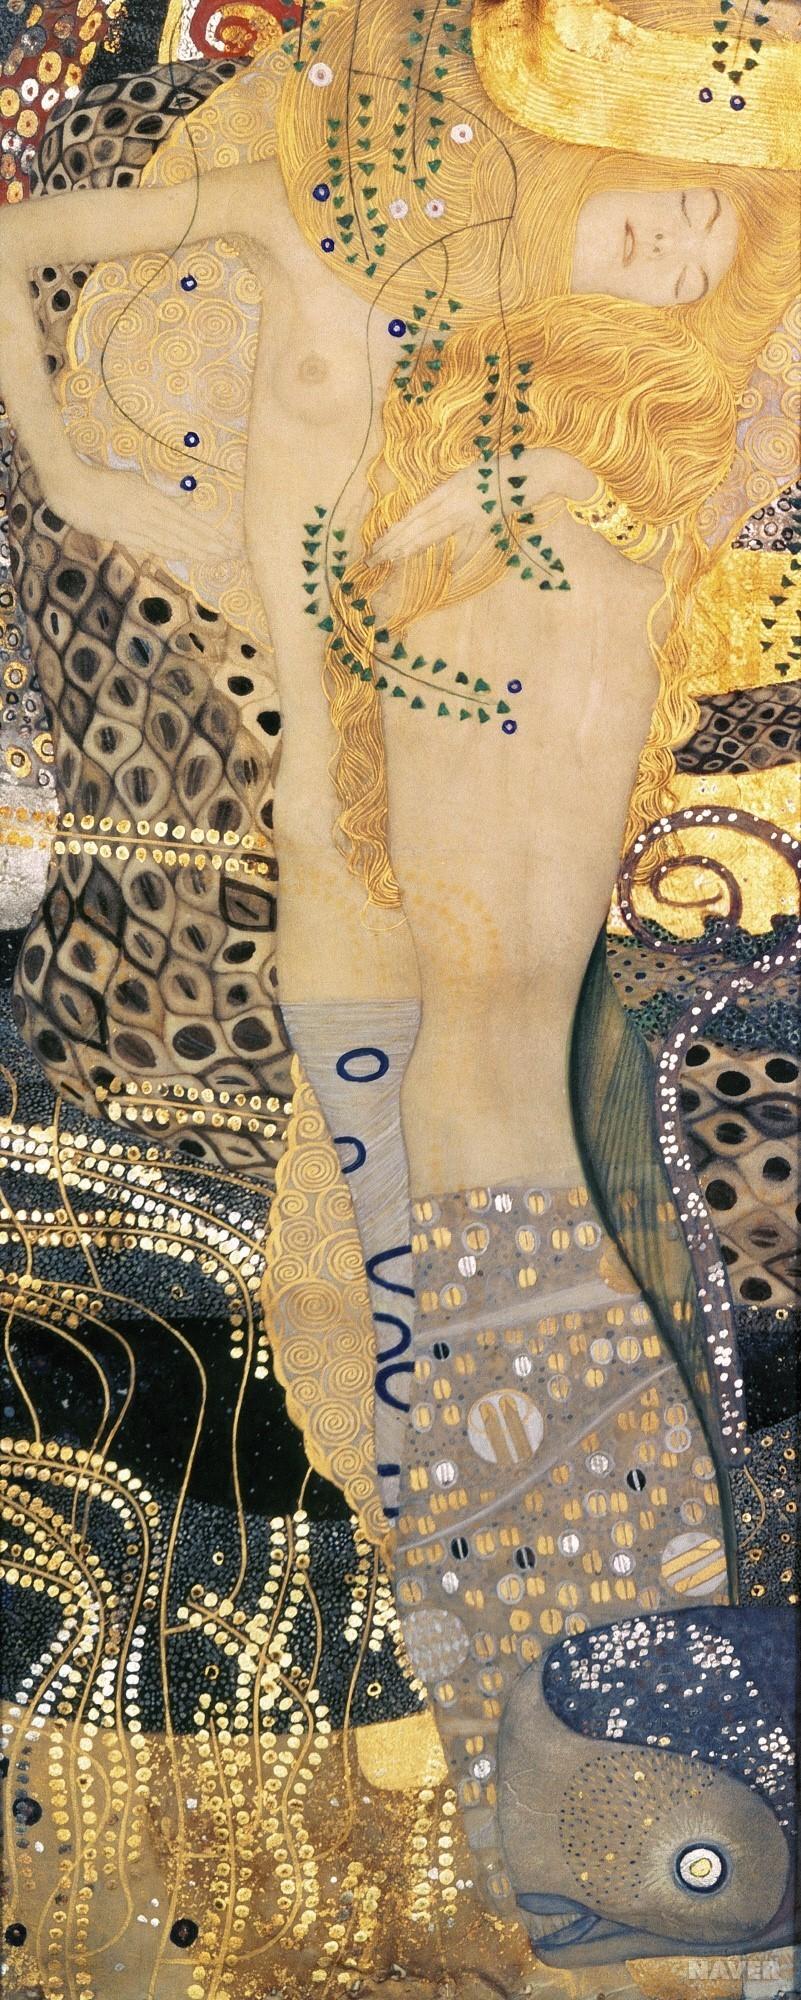 ⌈찬란한 황금빛의 향연⌋ 구스타프 클림트(Gustav Klimt)